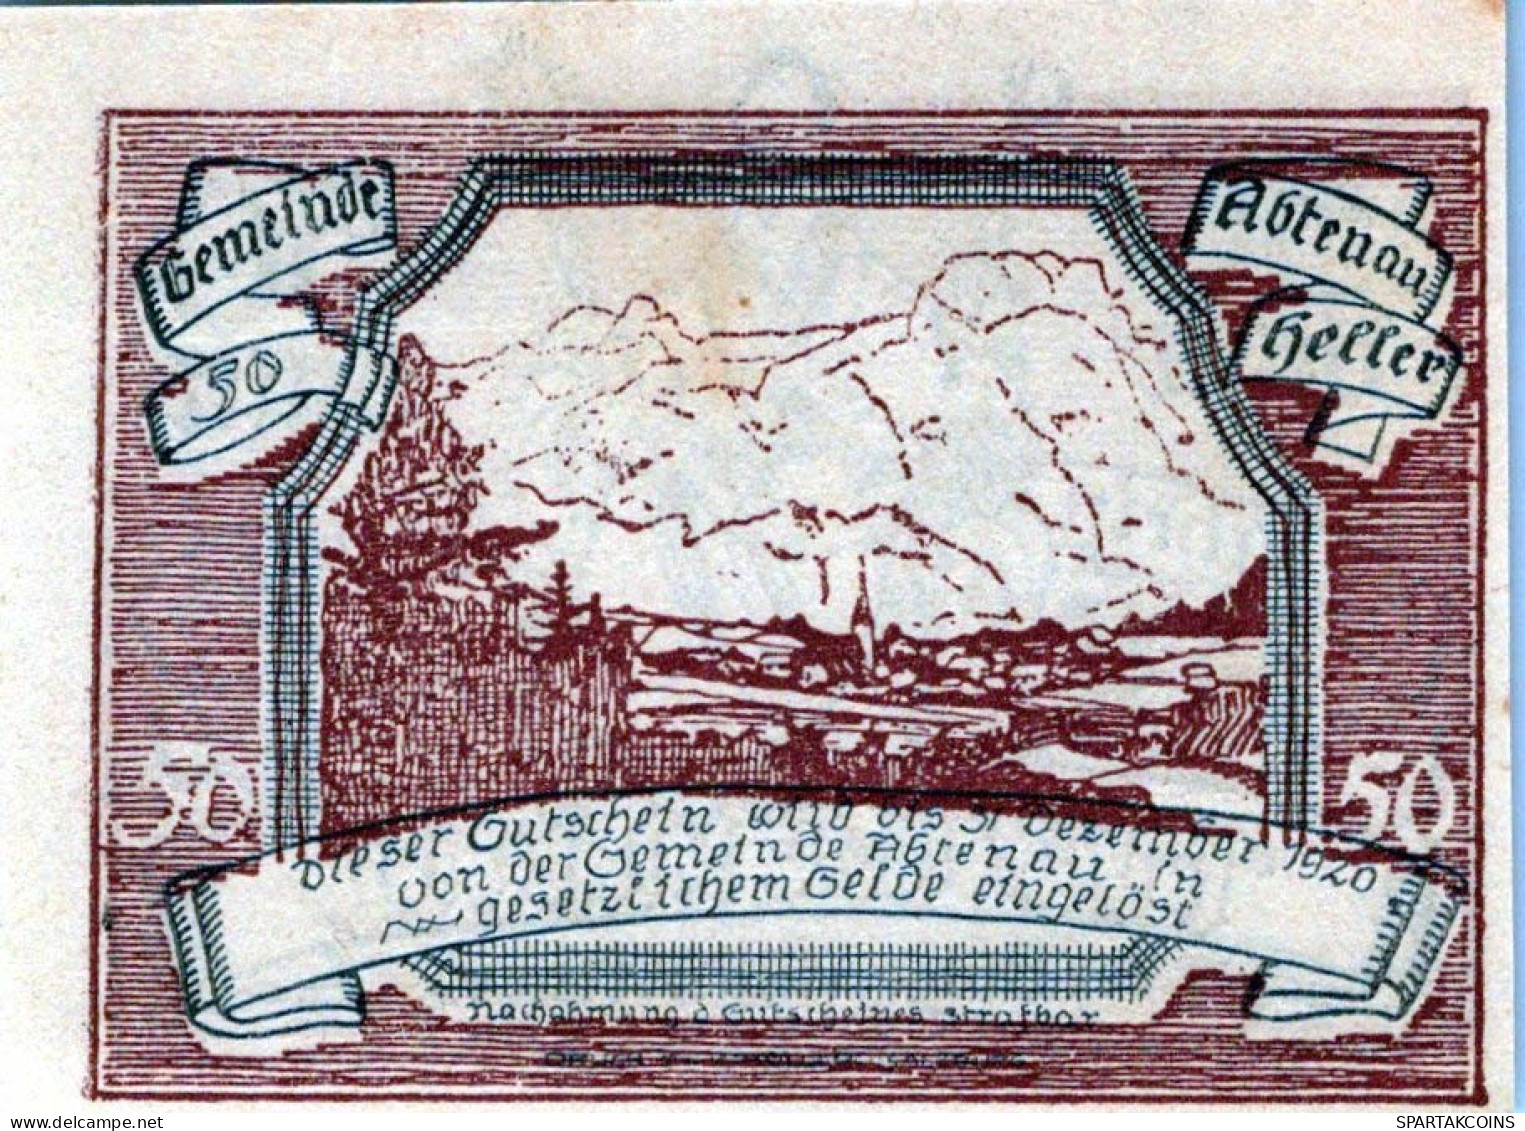 50 HELLER 1920 Stadt ABTENAU Salzburg Österreich Notgeld Banknote #PE161 - [11] Local Banknote Issues